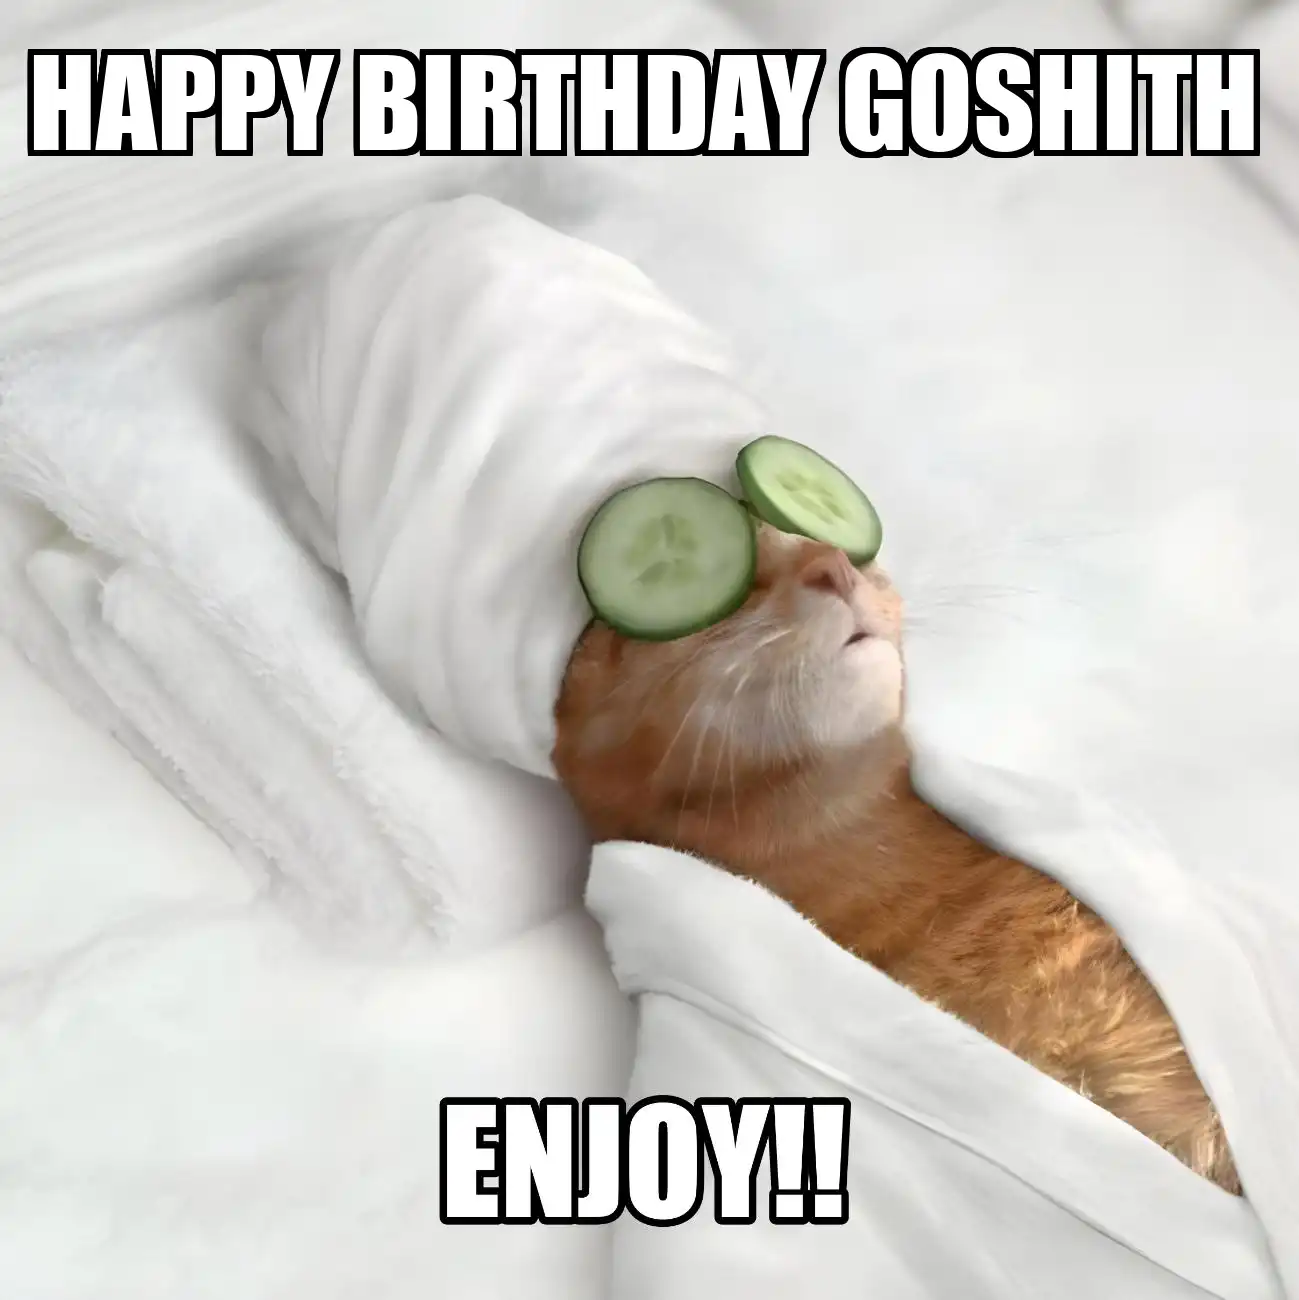 Happy Birthday Goshith Enjoy Cat Meme